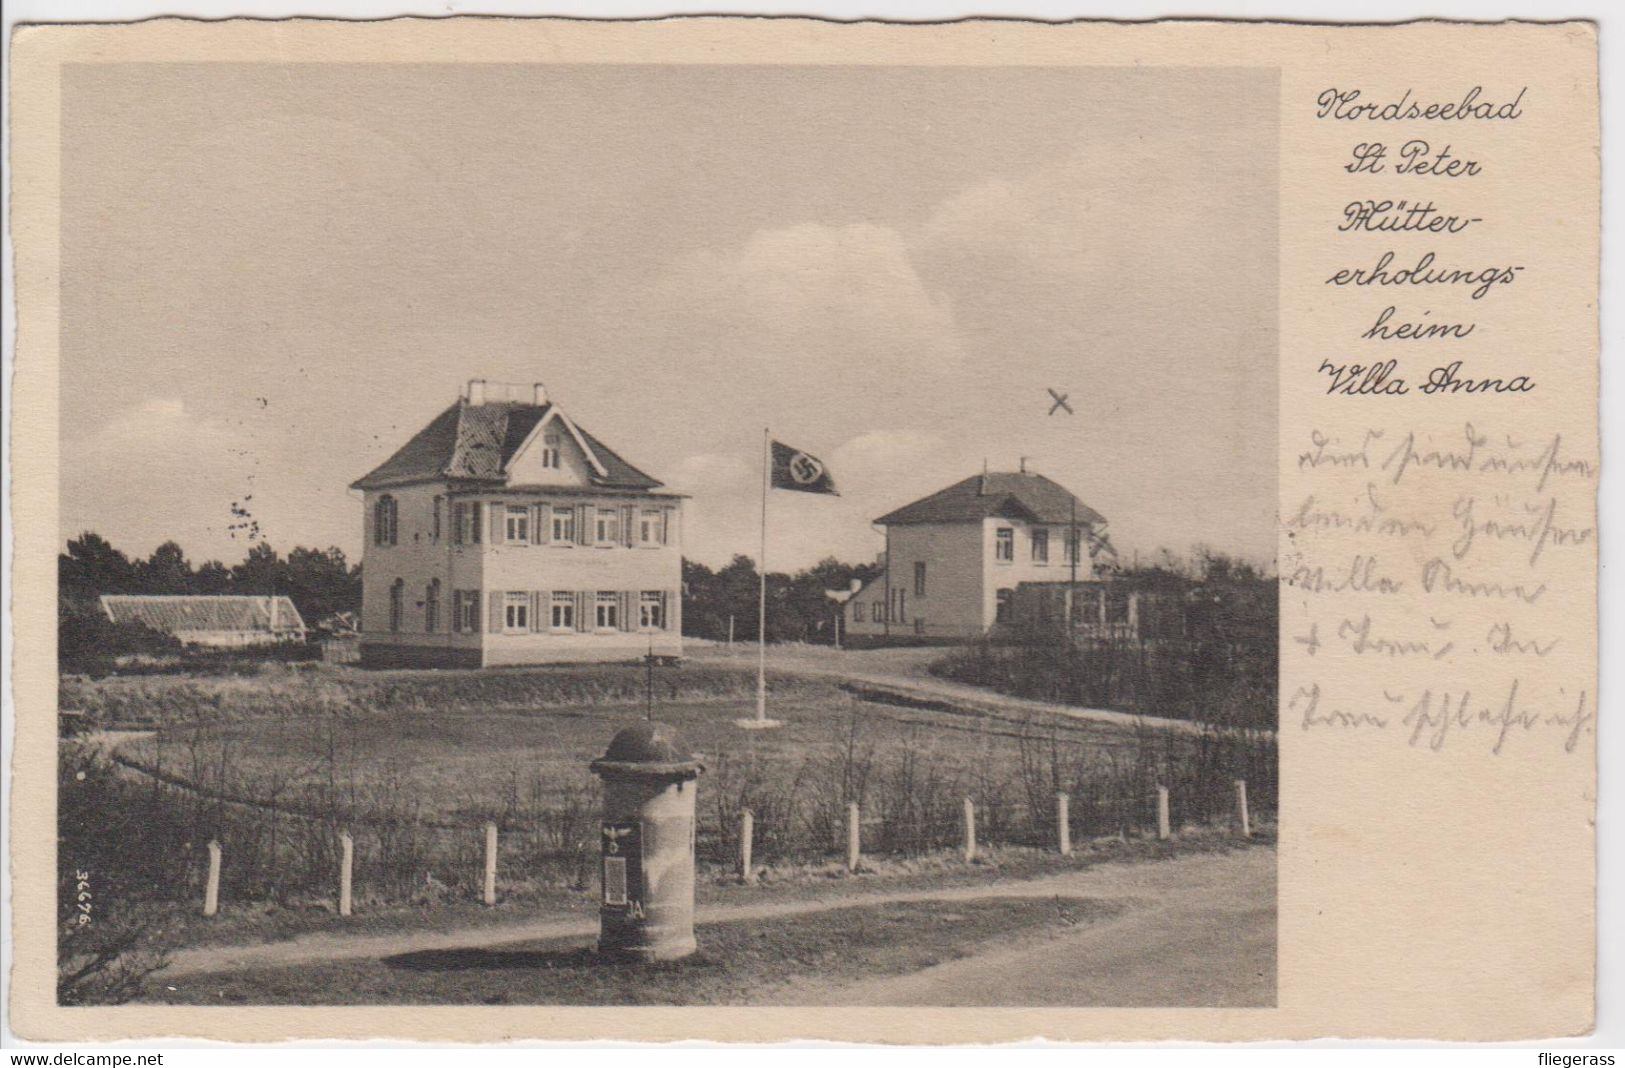 AK St. Peter (Sankt Ording) - Müttererholungsheim Villa Anna - 1938 - Nordseebad - St. Peter-Ording